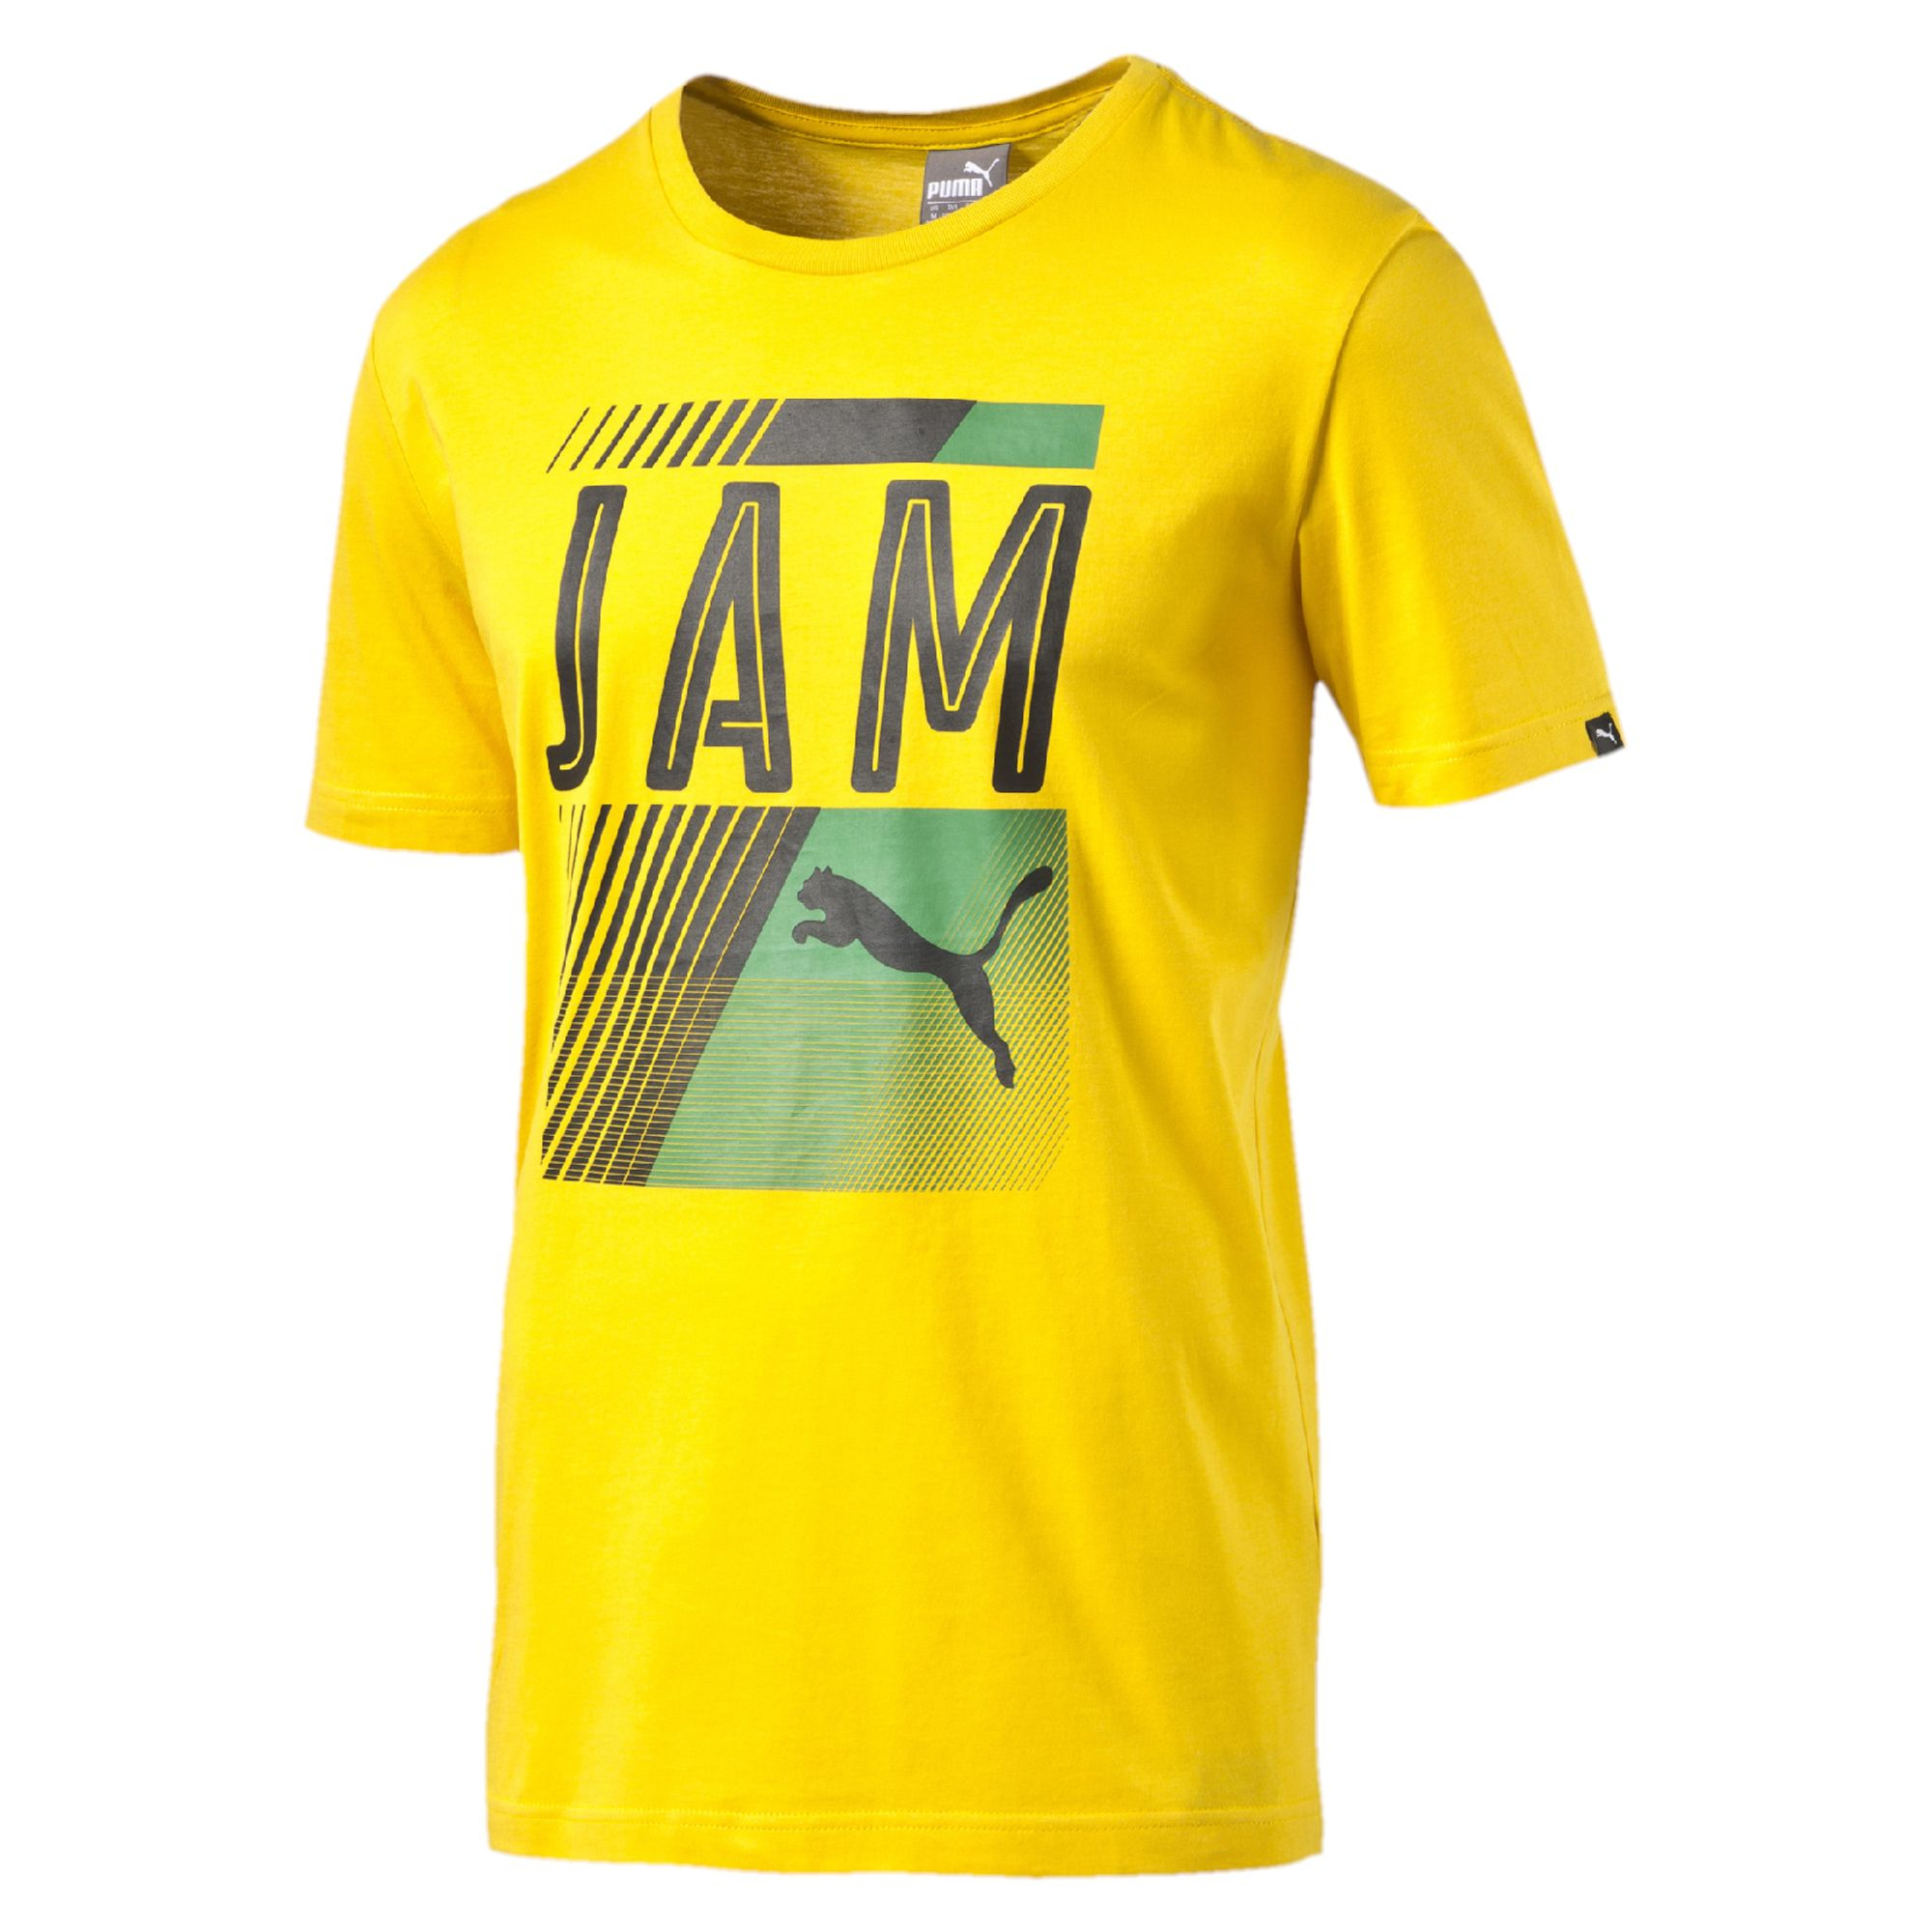 puma shirt jamaica Off 50% - sirinscrochet.com